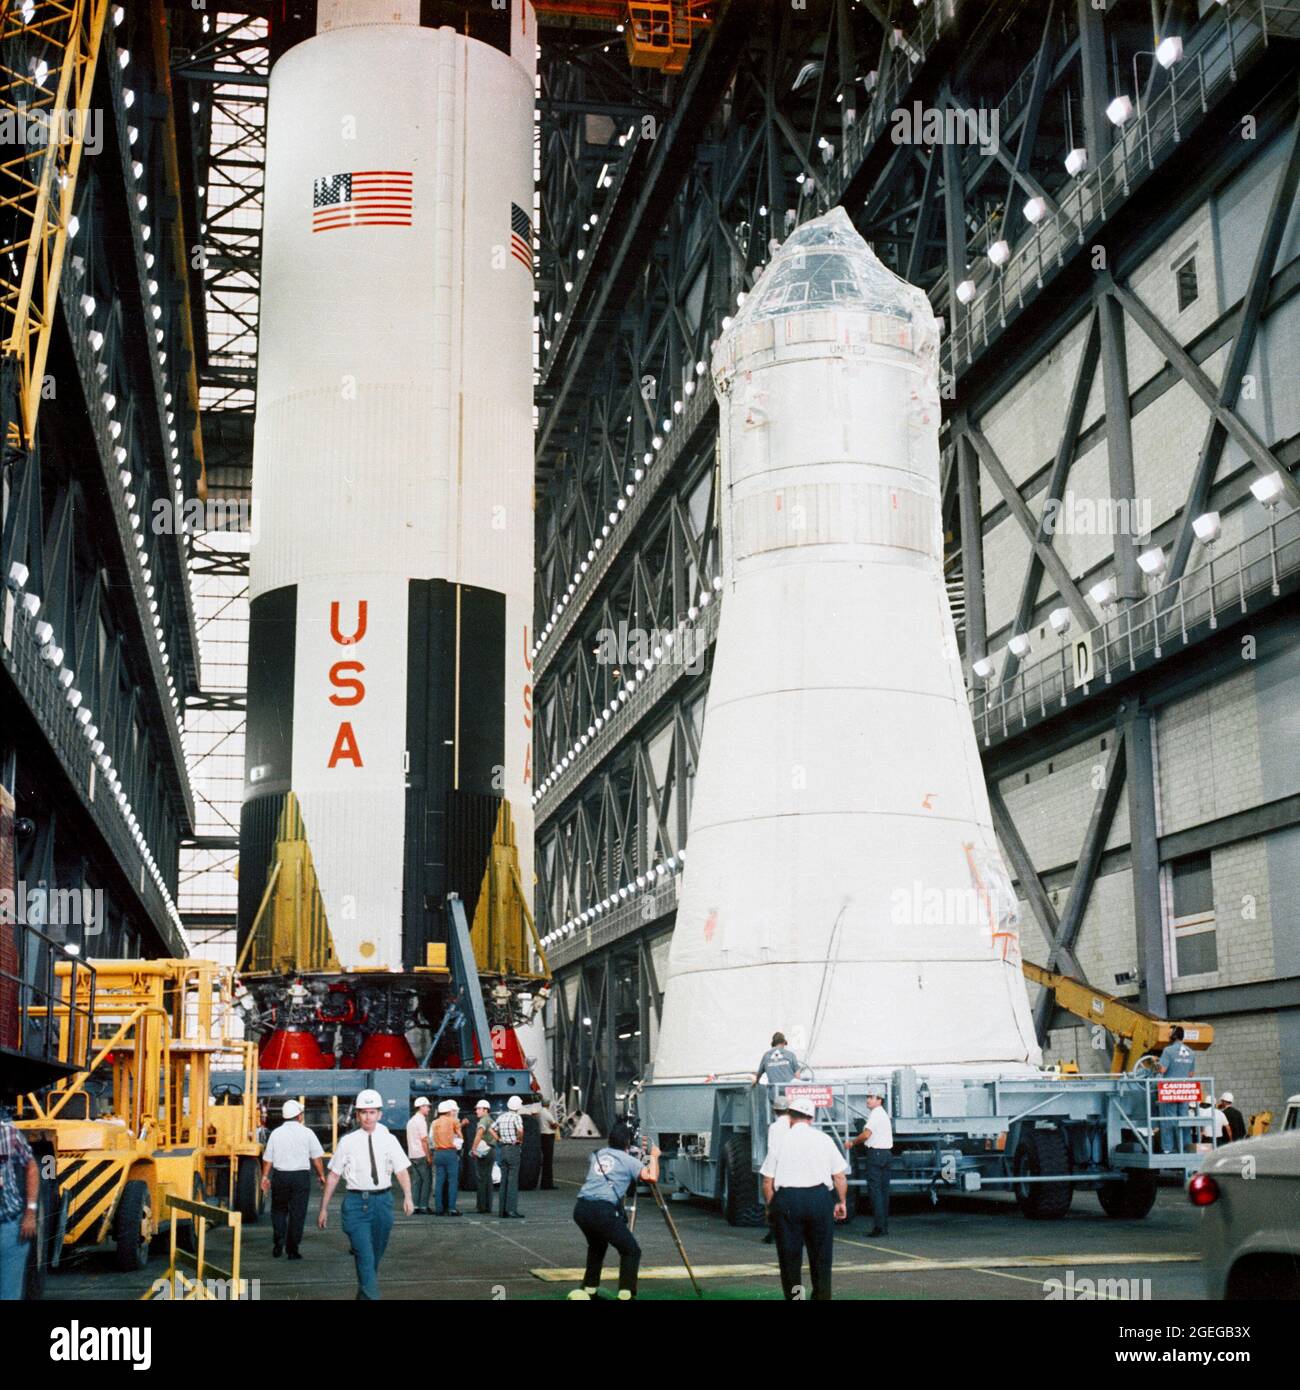 Il modulo di comando/assistenza Apollo Spacecraft 104 e il modulo Lunar 3 arrivano all'edificio VAB (Vehicle Assembly Building) per l'accoppiamento sul veicolo di lancio Saturn 504. Lo stack Saturn 504 è fuori vista. Il primo stadio Saturno V (S-IC) sullo sfondo sinistro è programmato per un volo successivo Foto Stock